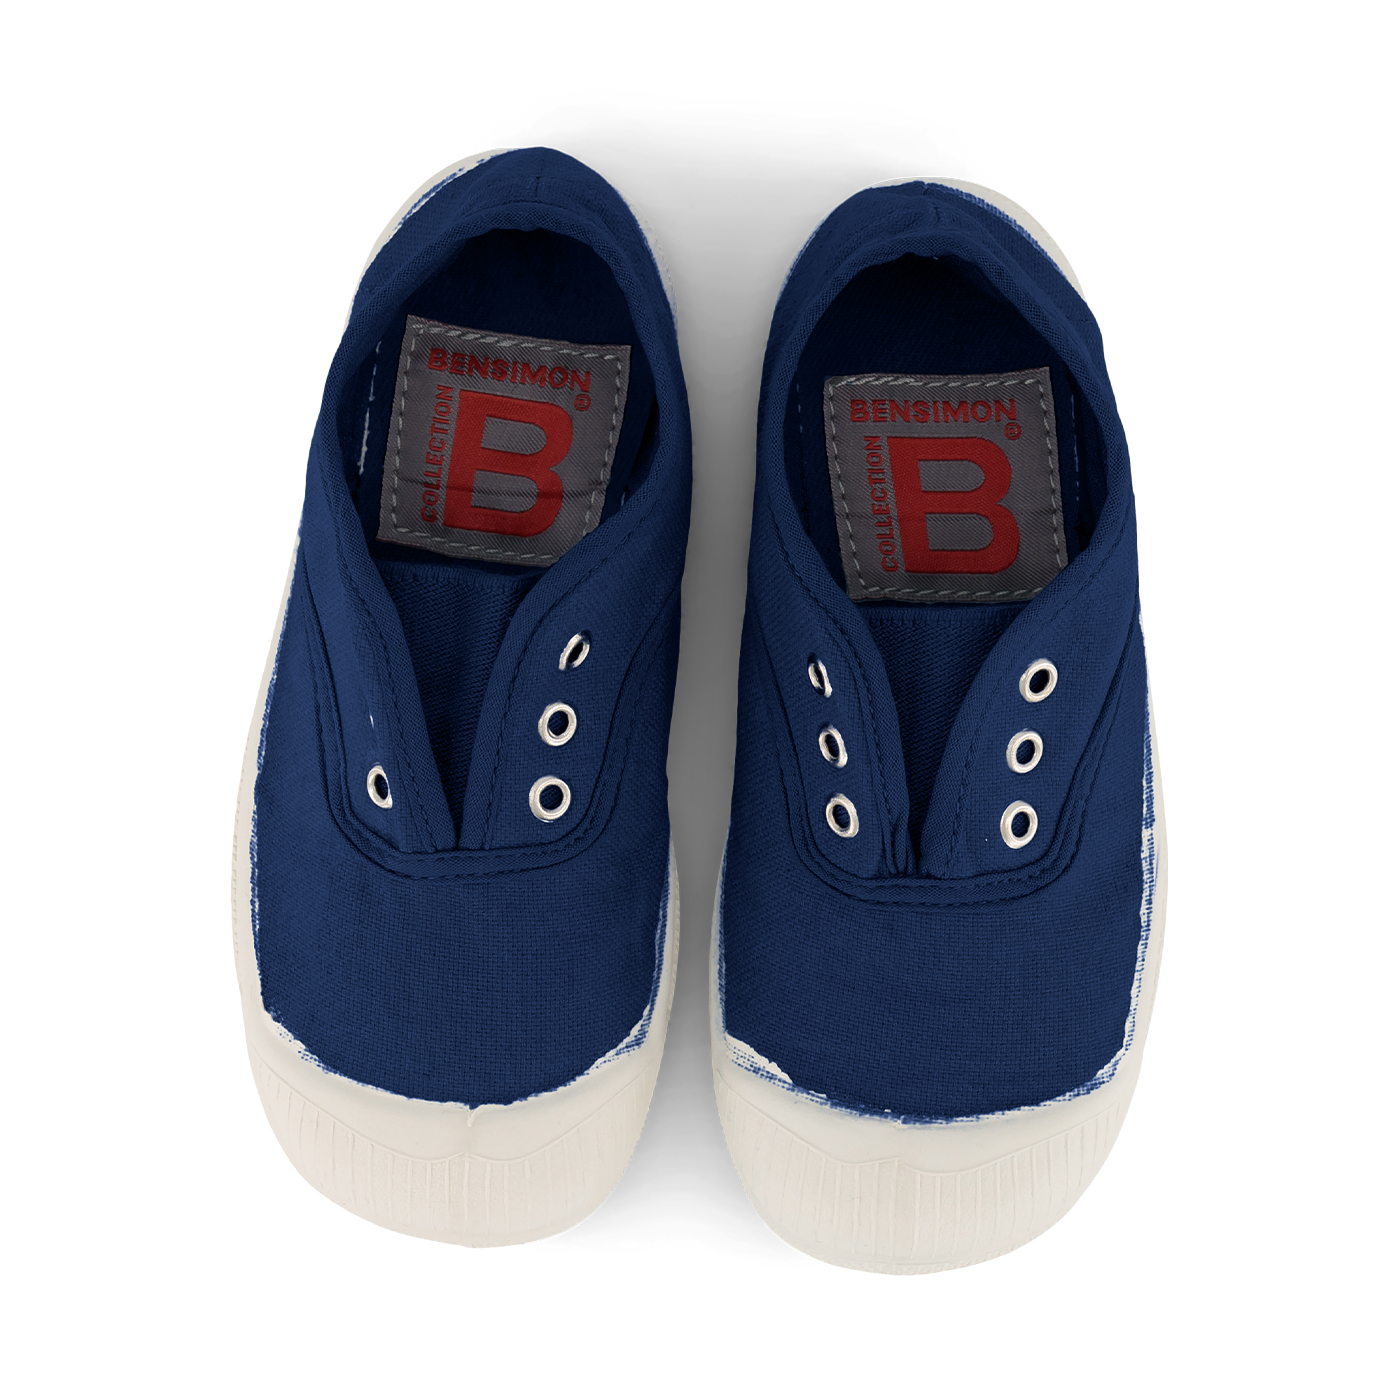  Bensimon Elly Çocuk Spor Ayakkabı  | Indigo